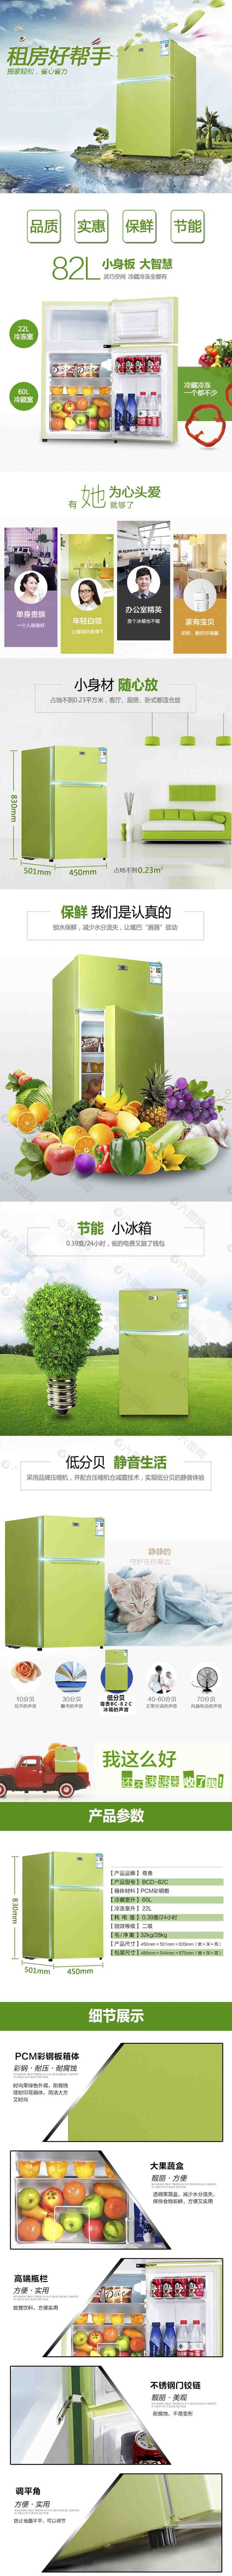 清新果绿冰箱详情页